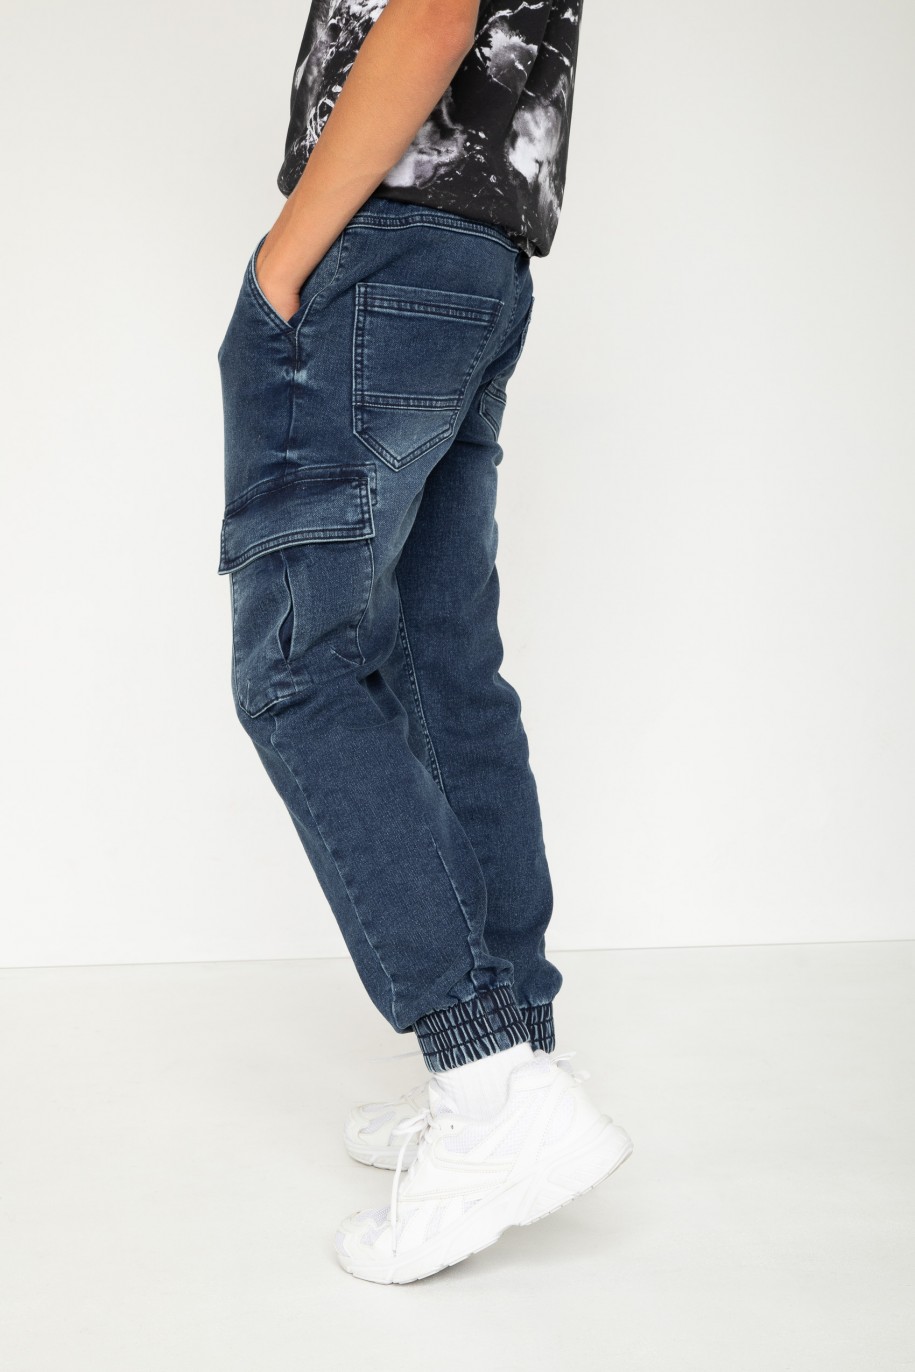 Niebieskie jeansowe spodnie jogger - 44194